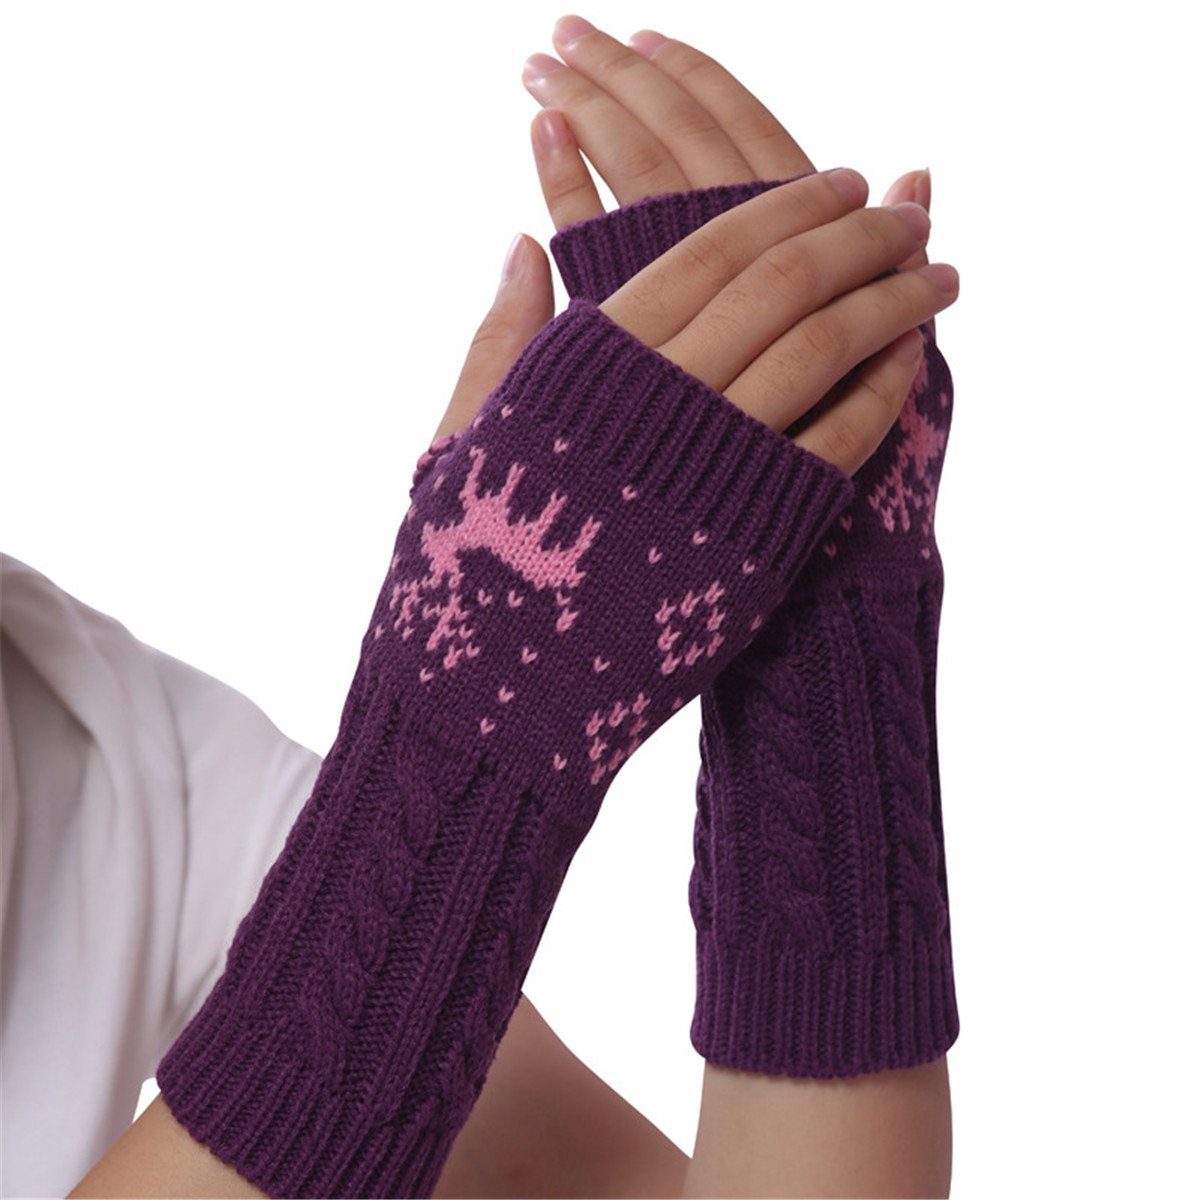 Die Sterne Trikot-Handschuhe Lila fingerlose Handschuhe Rentier-Design mit